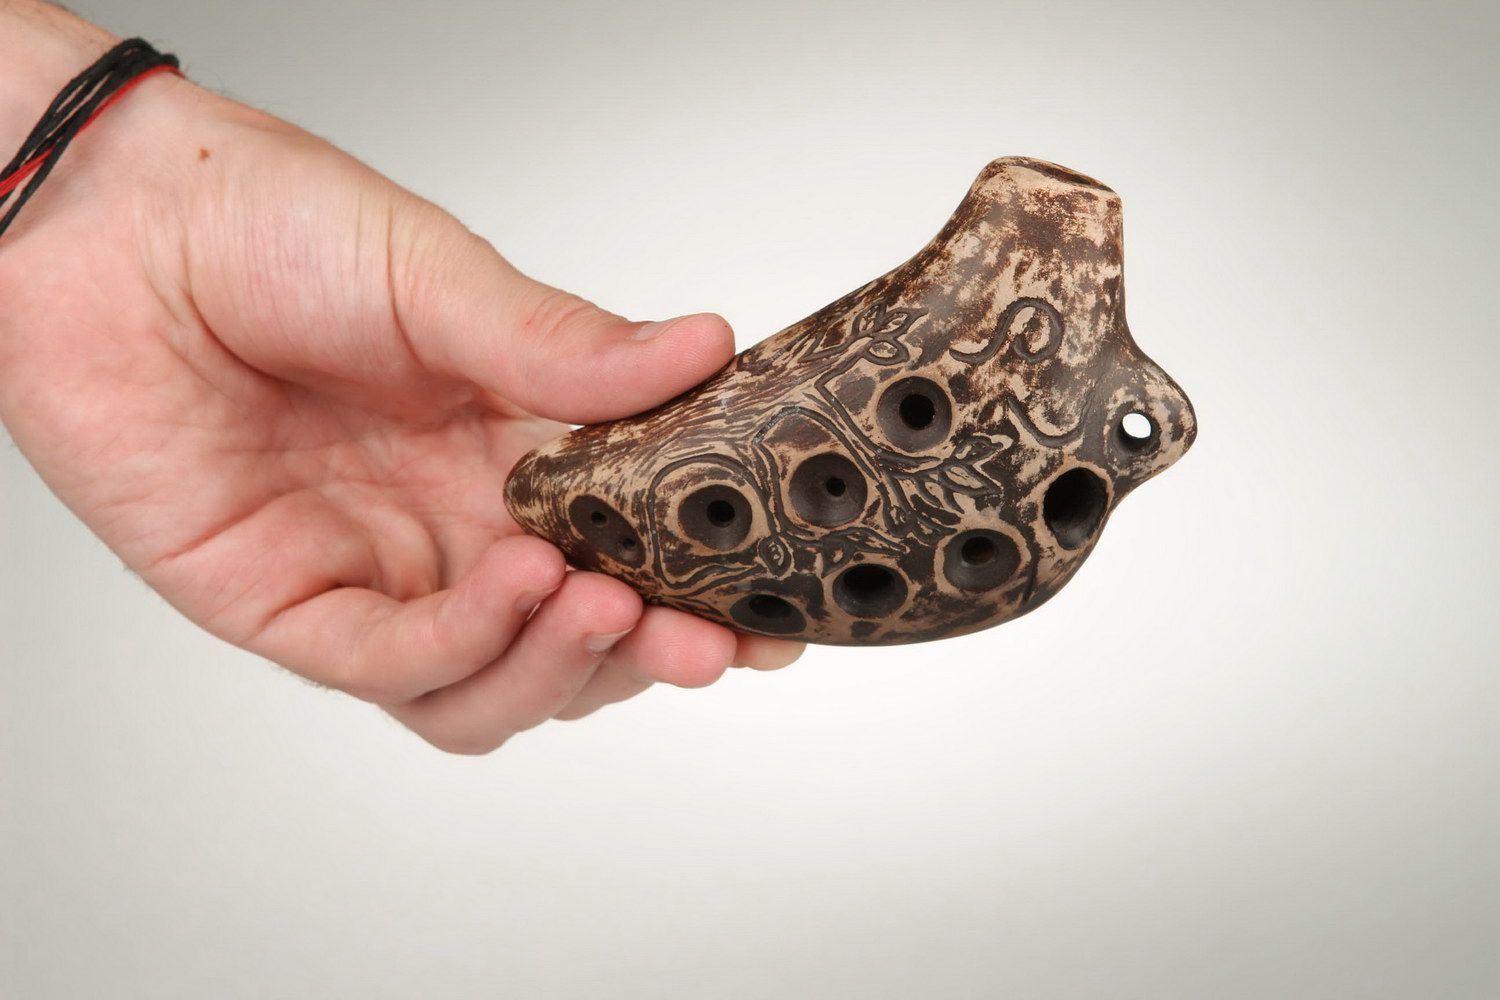 Ocarina, globular flute made of clay photo 3